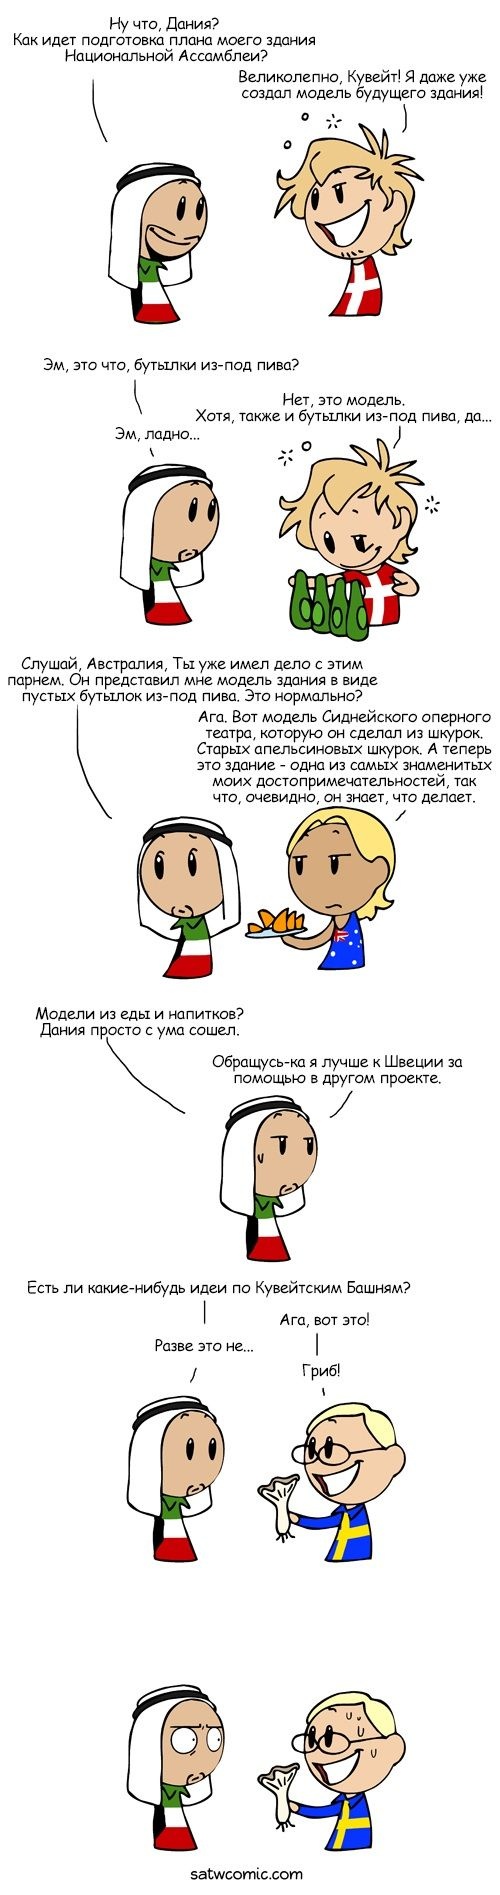 Смешные комиксы (20 картинок) 07.07.2014